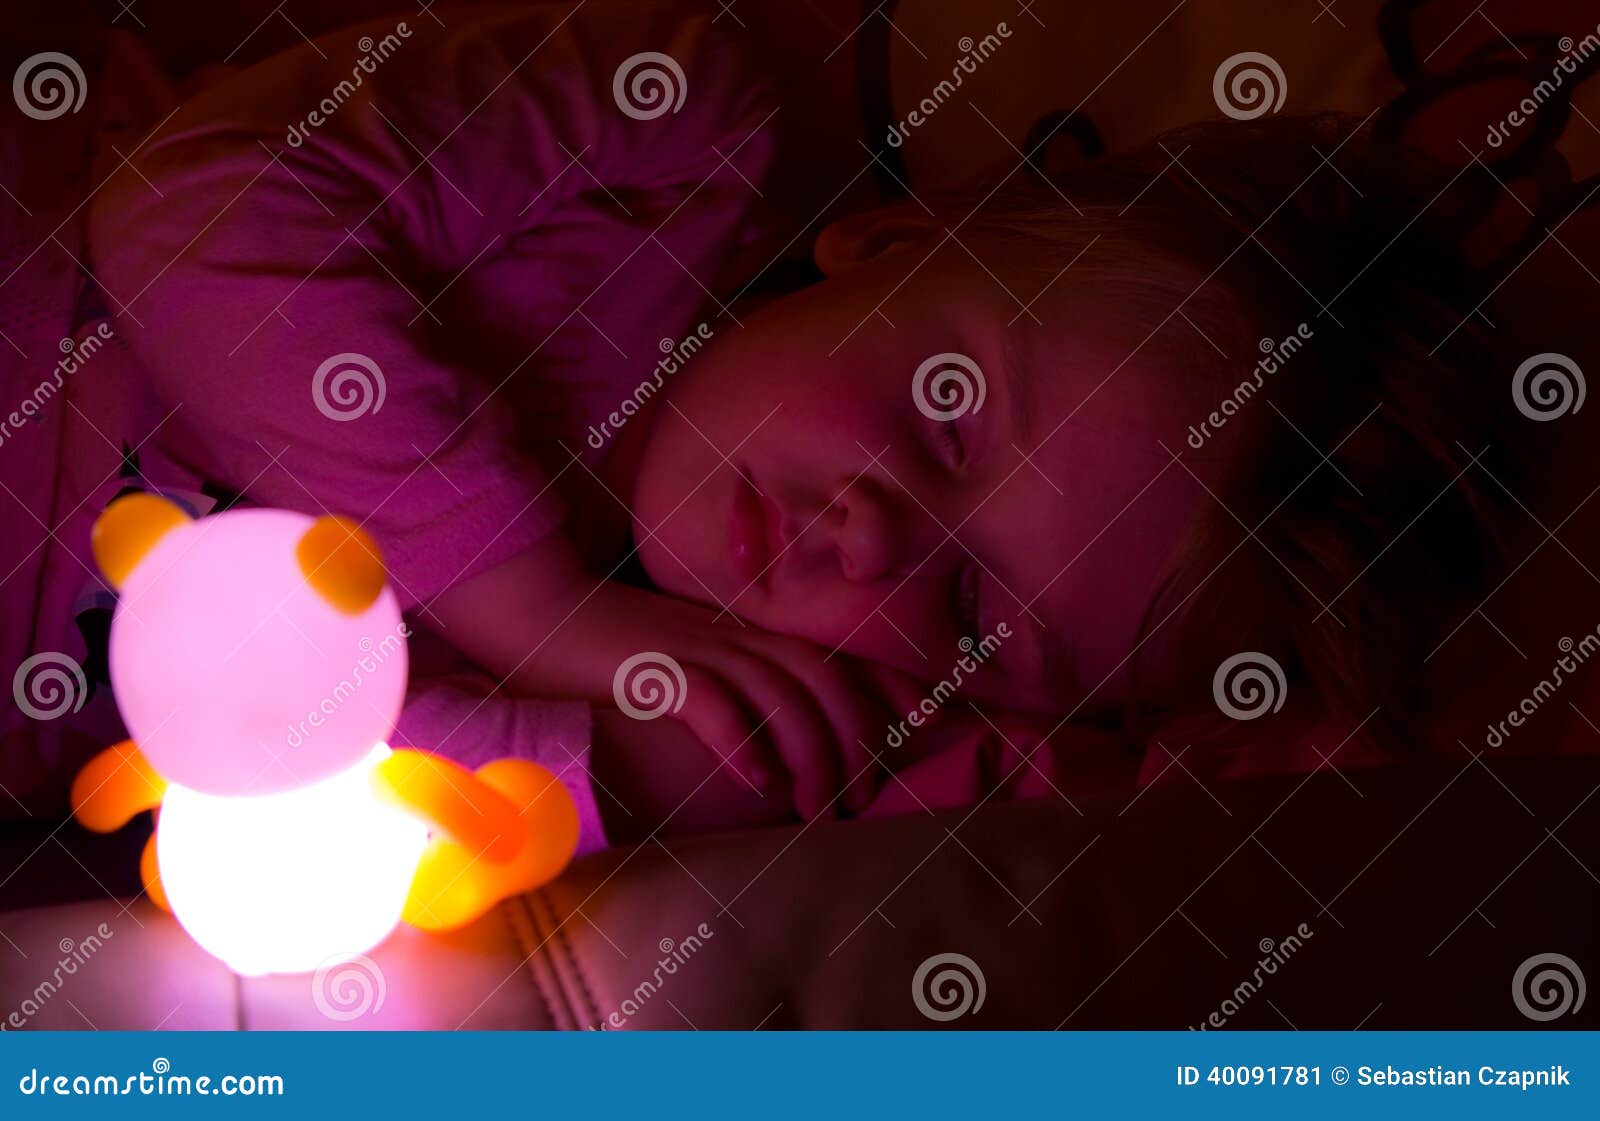 little girl night light